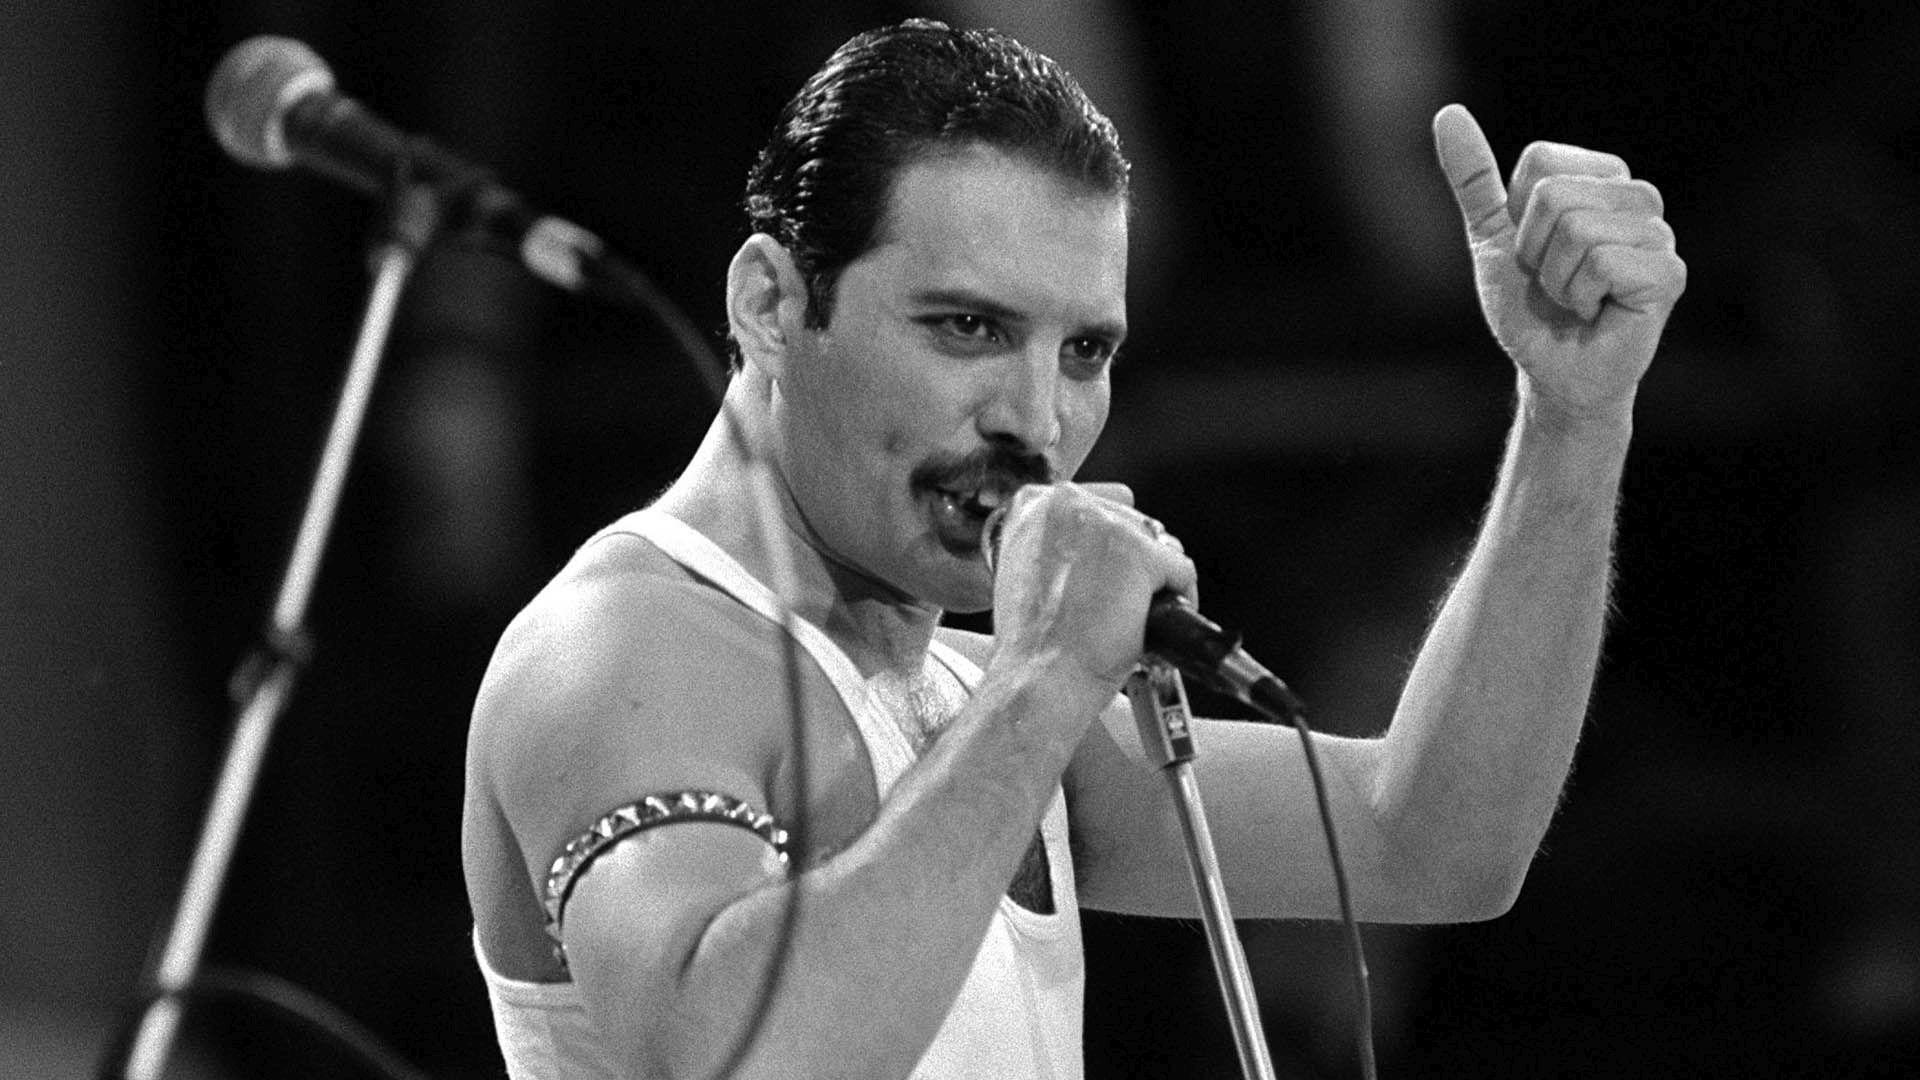 E oficial. Vocea lui Freddie Mercury suna așa pentru că era ”o forță a naturii cu viteza unui uragan!”